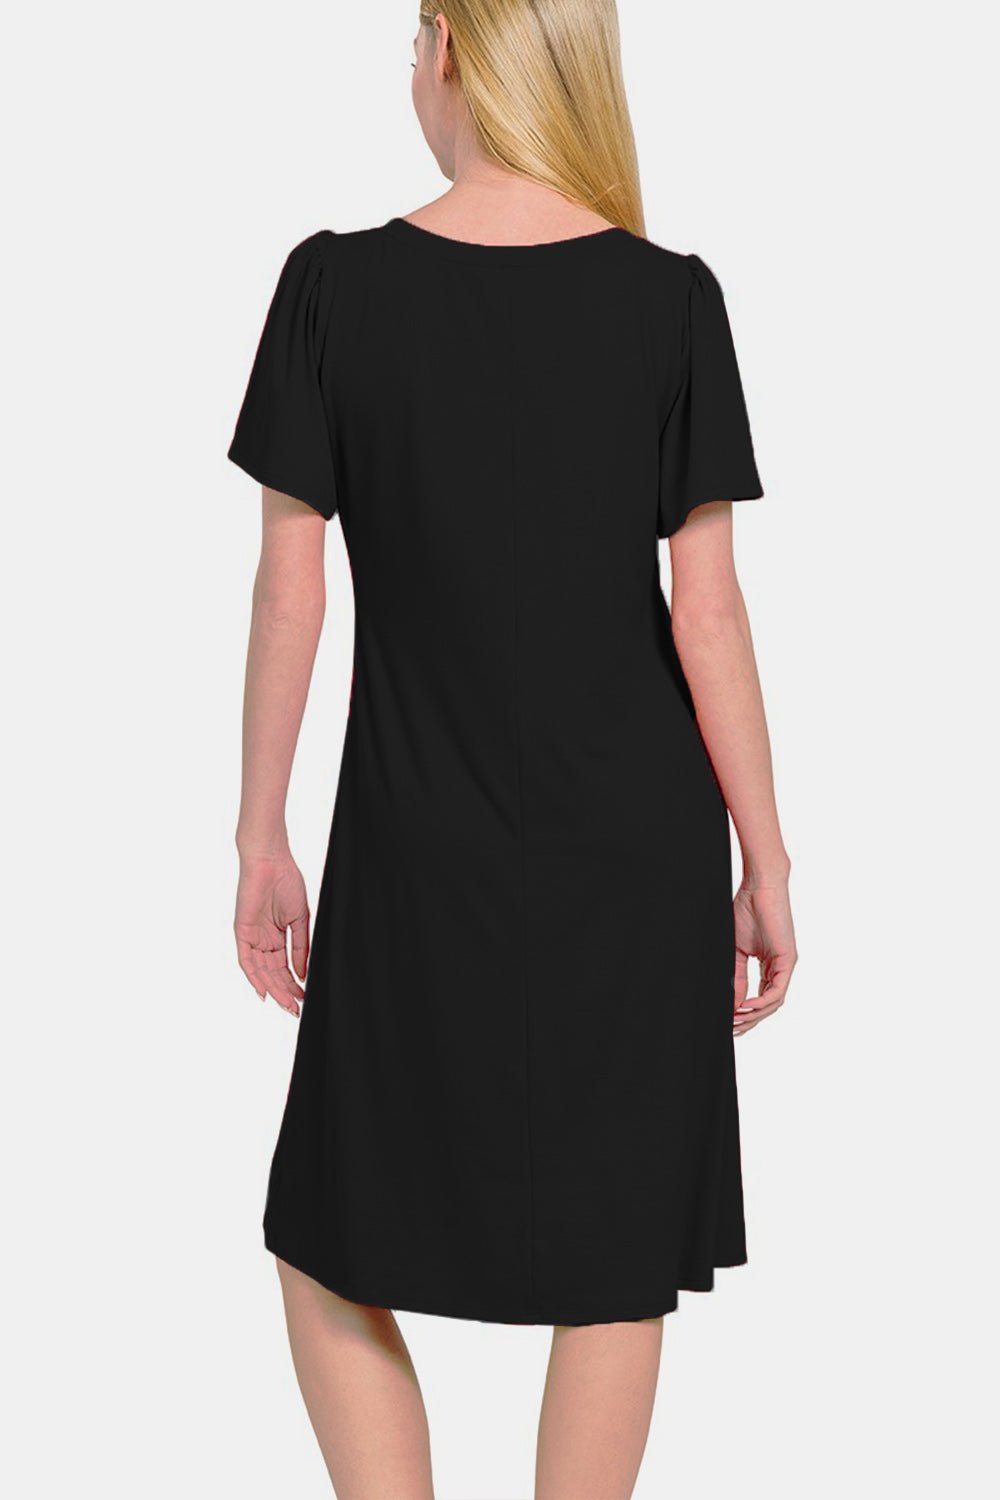 V-Neck Short Sleeve Knee-Length Dress in BlackKnee-Length DressZenana